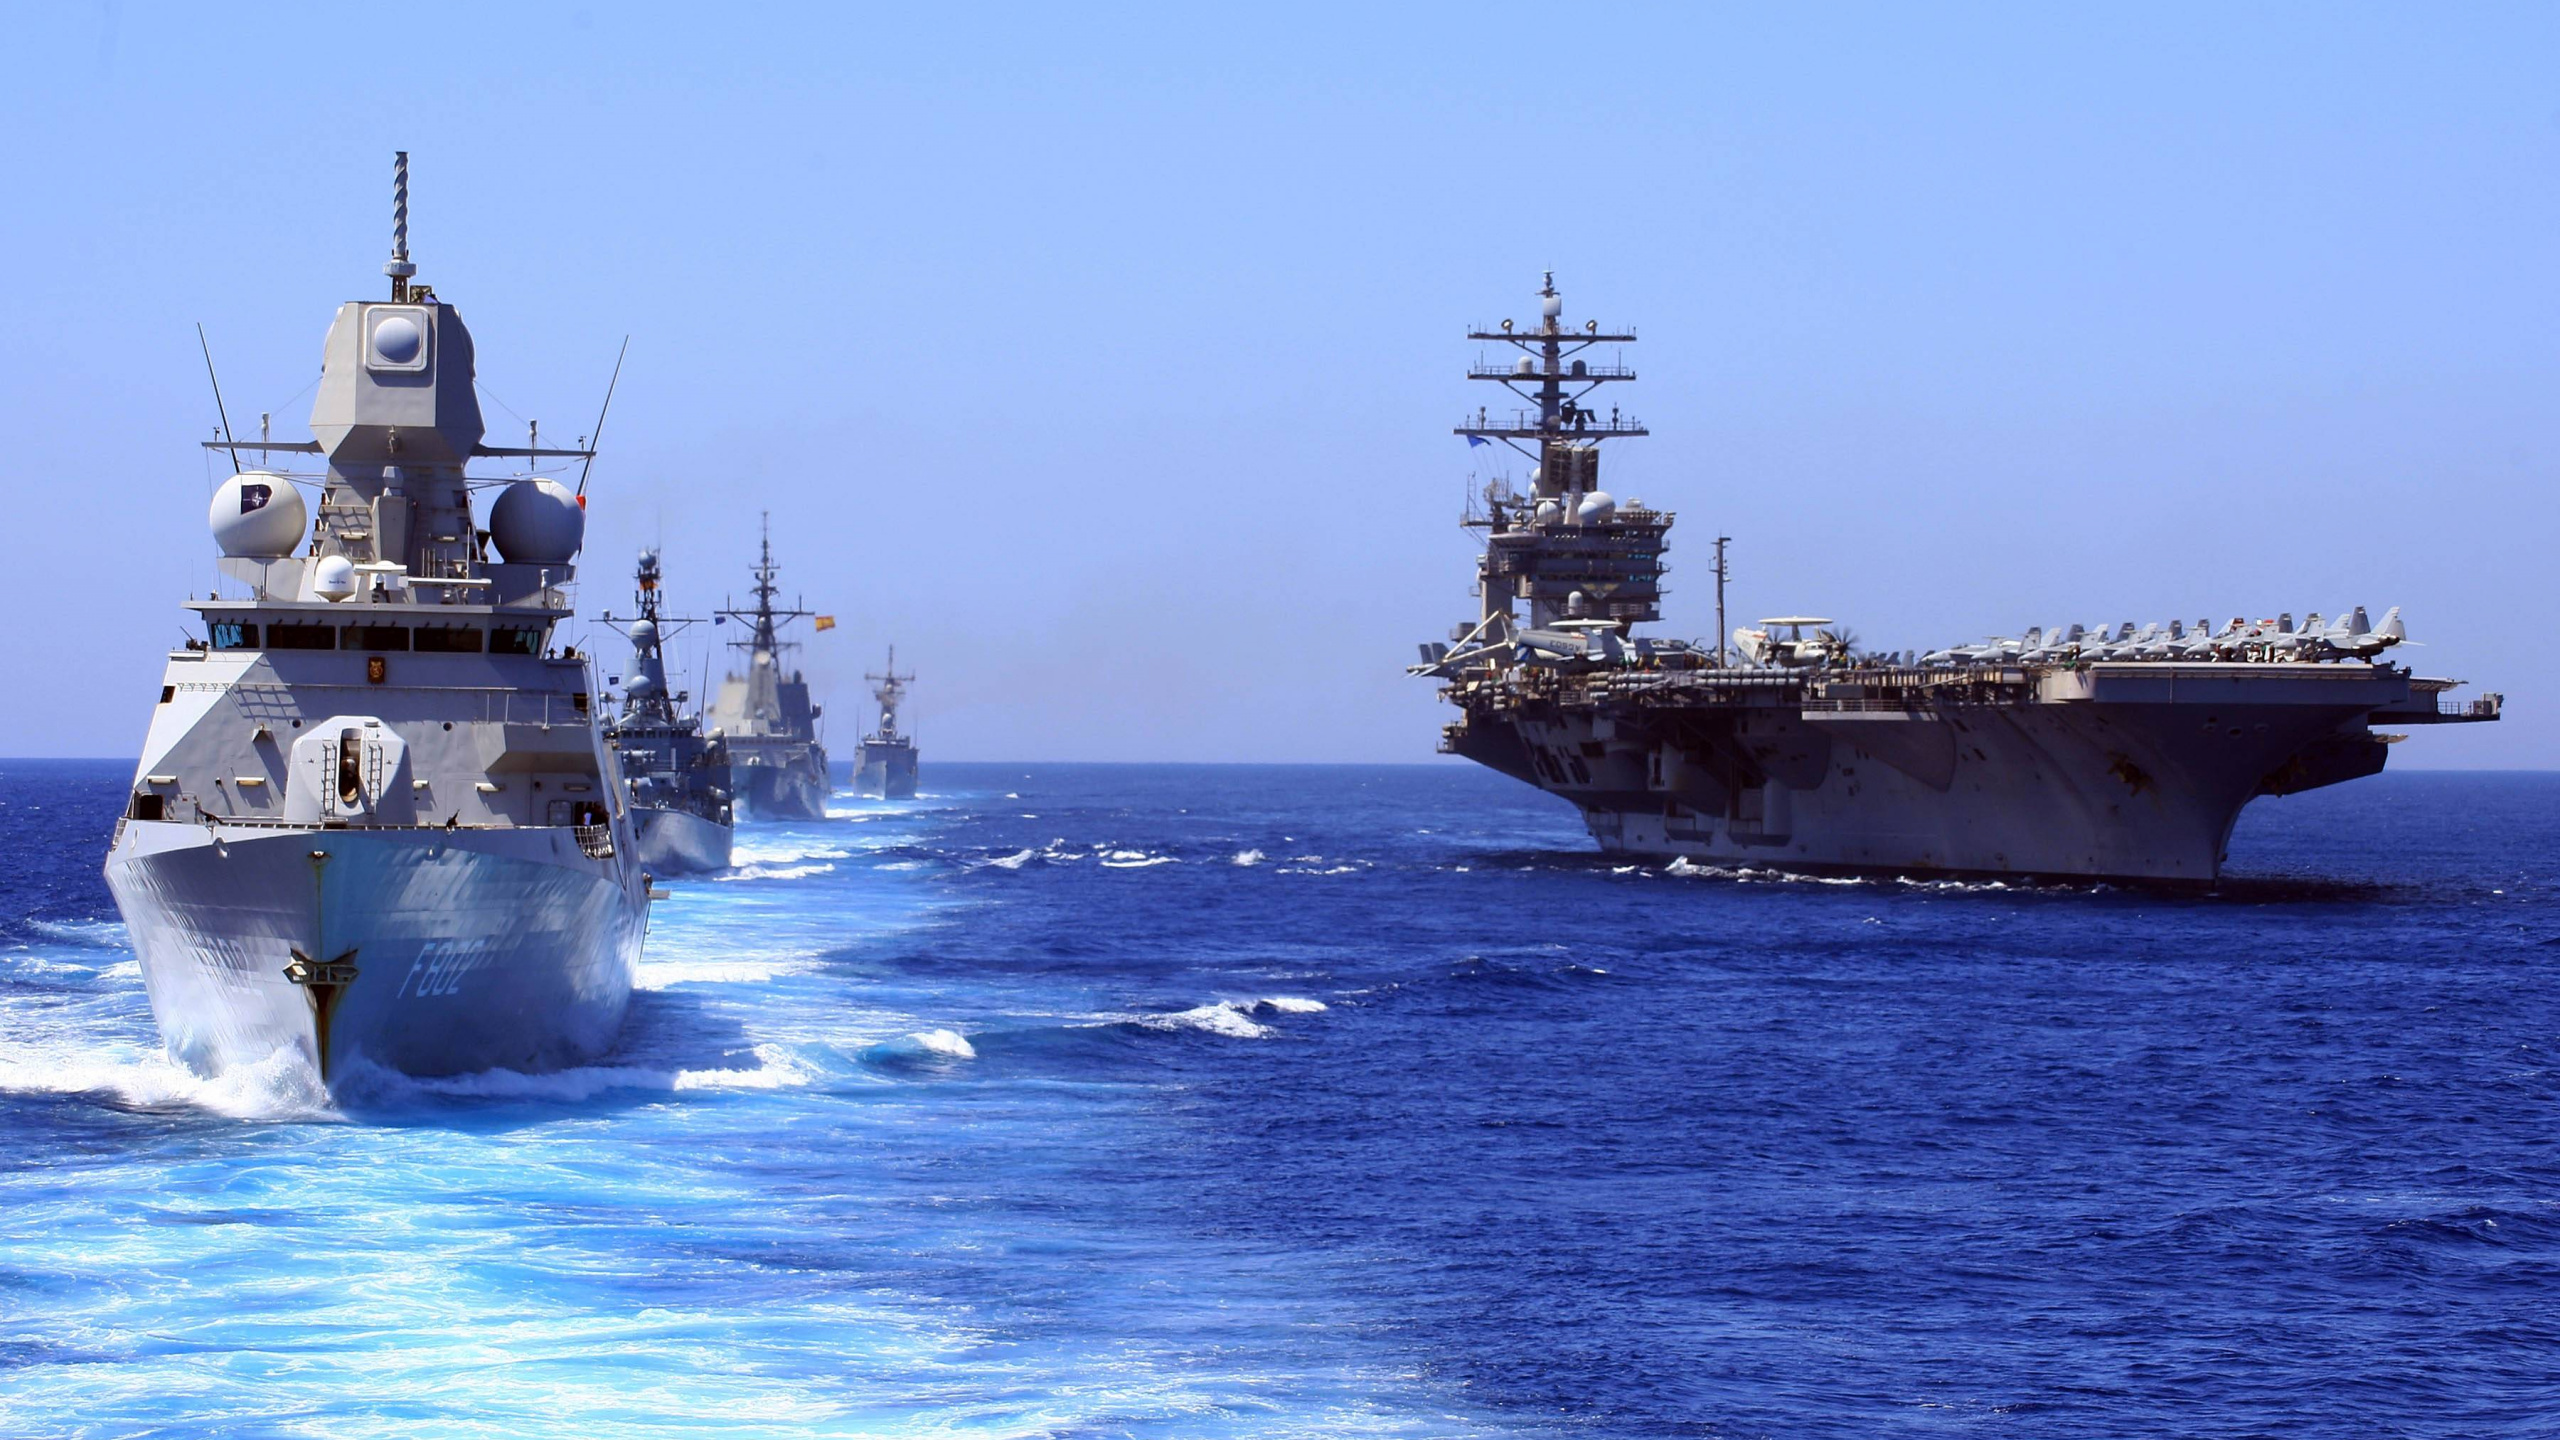 航空母舰, 美国海军, 护卫舰, 军舰, 海军的船 壁纸 2560x1440 允许